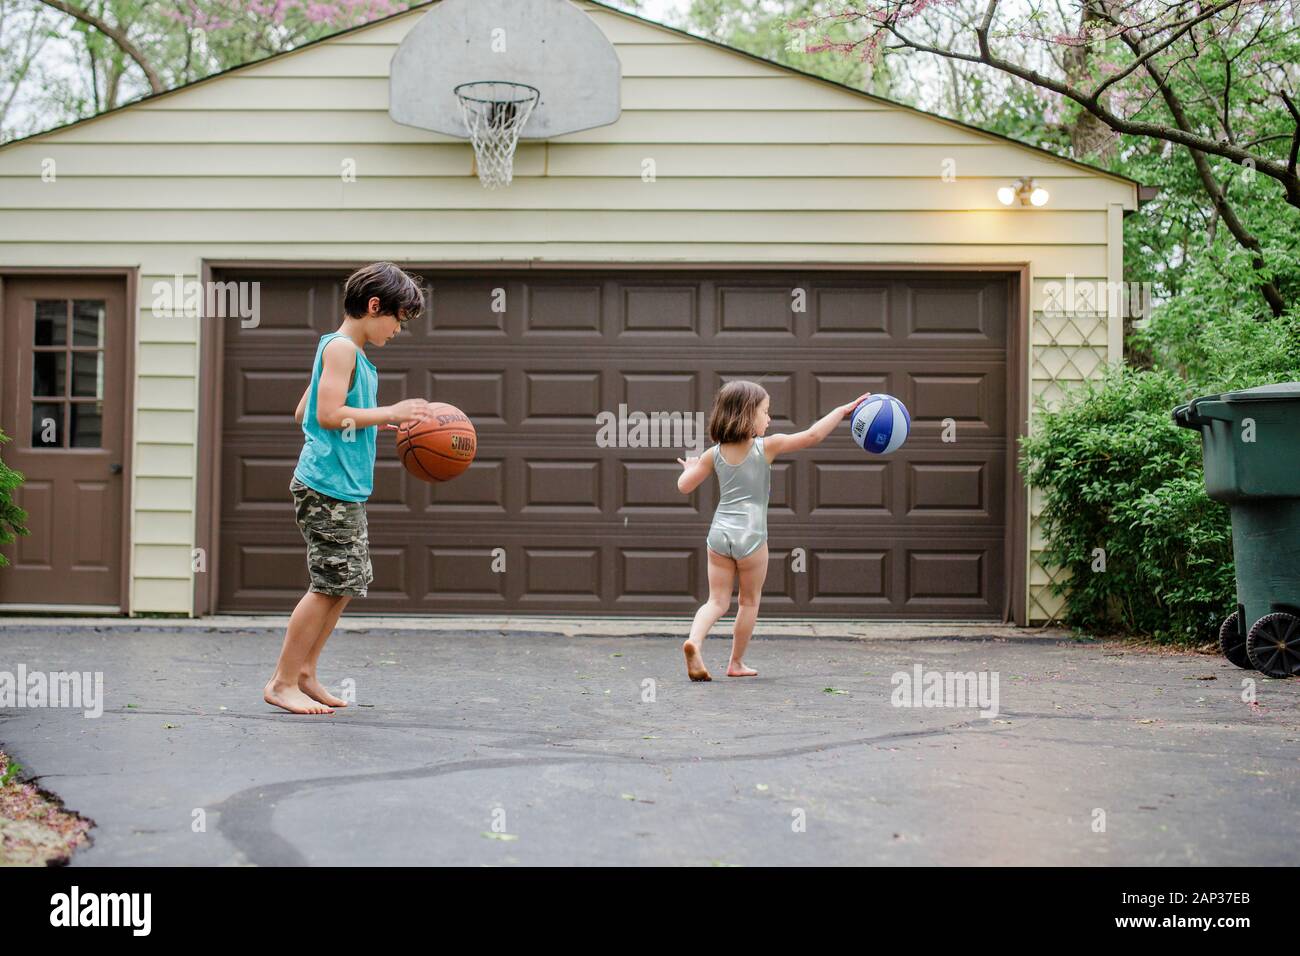 deux petits enfants pieds nus dribble ballons de basket dans une allée Banque D'Images